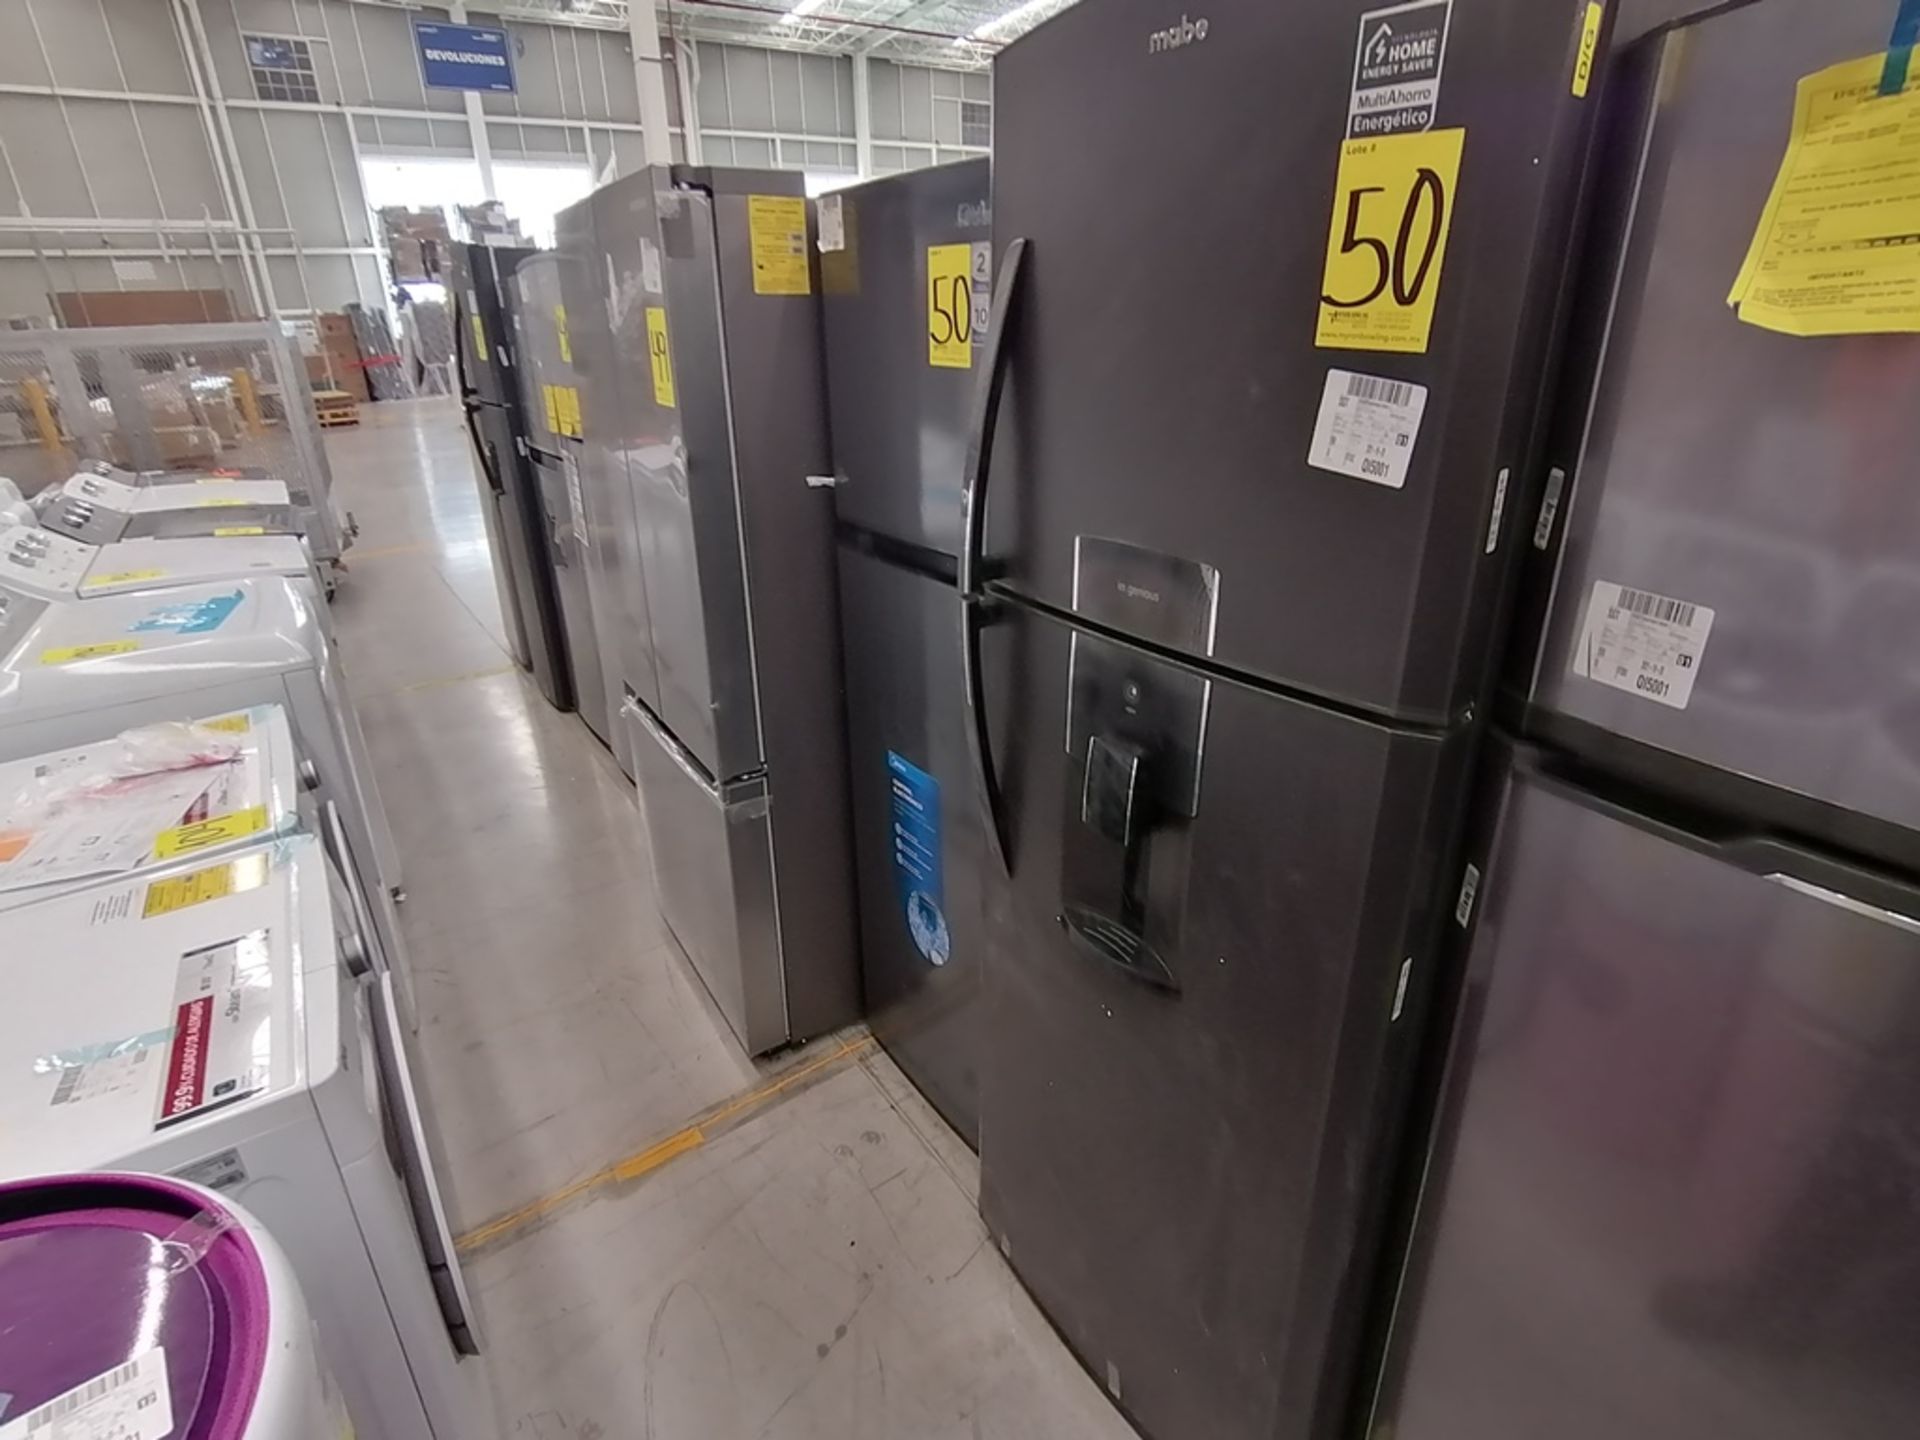 Lote de 2 refrigeradores incluye: 1 Refrigerador, Marca Midea, Modelo MRTN09G2NCS, Serie 341B261870 - Image 8 of 15